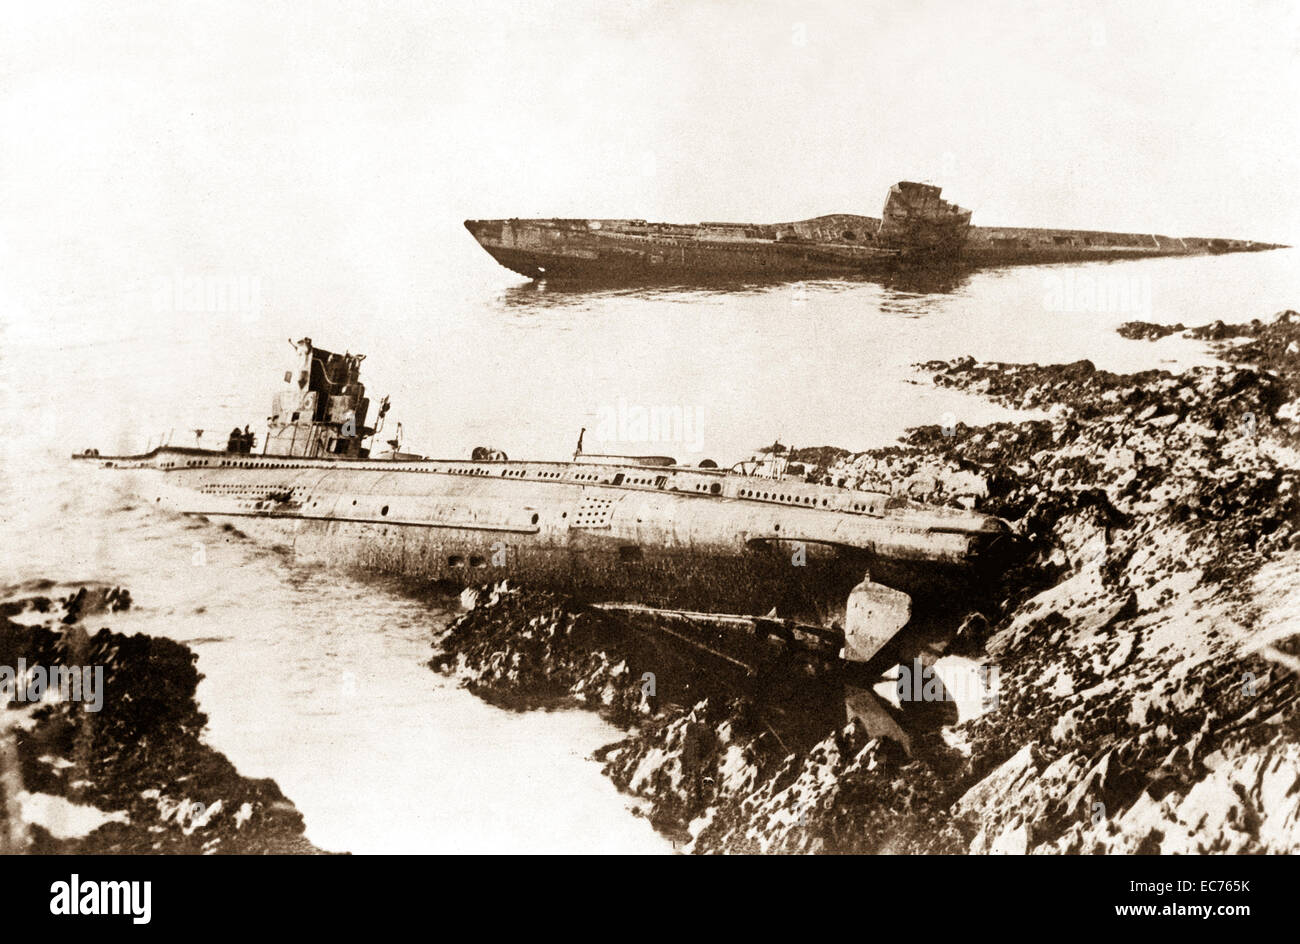 Ein bemerkenswerter Vorfall nach dem zweiten Weltkrieg war das Waschen oben auf den Felsen in Falmouth, England, zwei deutsche U-Boote.  Sie wurden gegossen, aber ein paar Füße auseinander; Beide hatten während des Krieges versenkt wurden.  Ca. 1921. Stockfoto